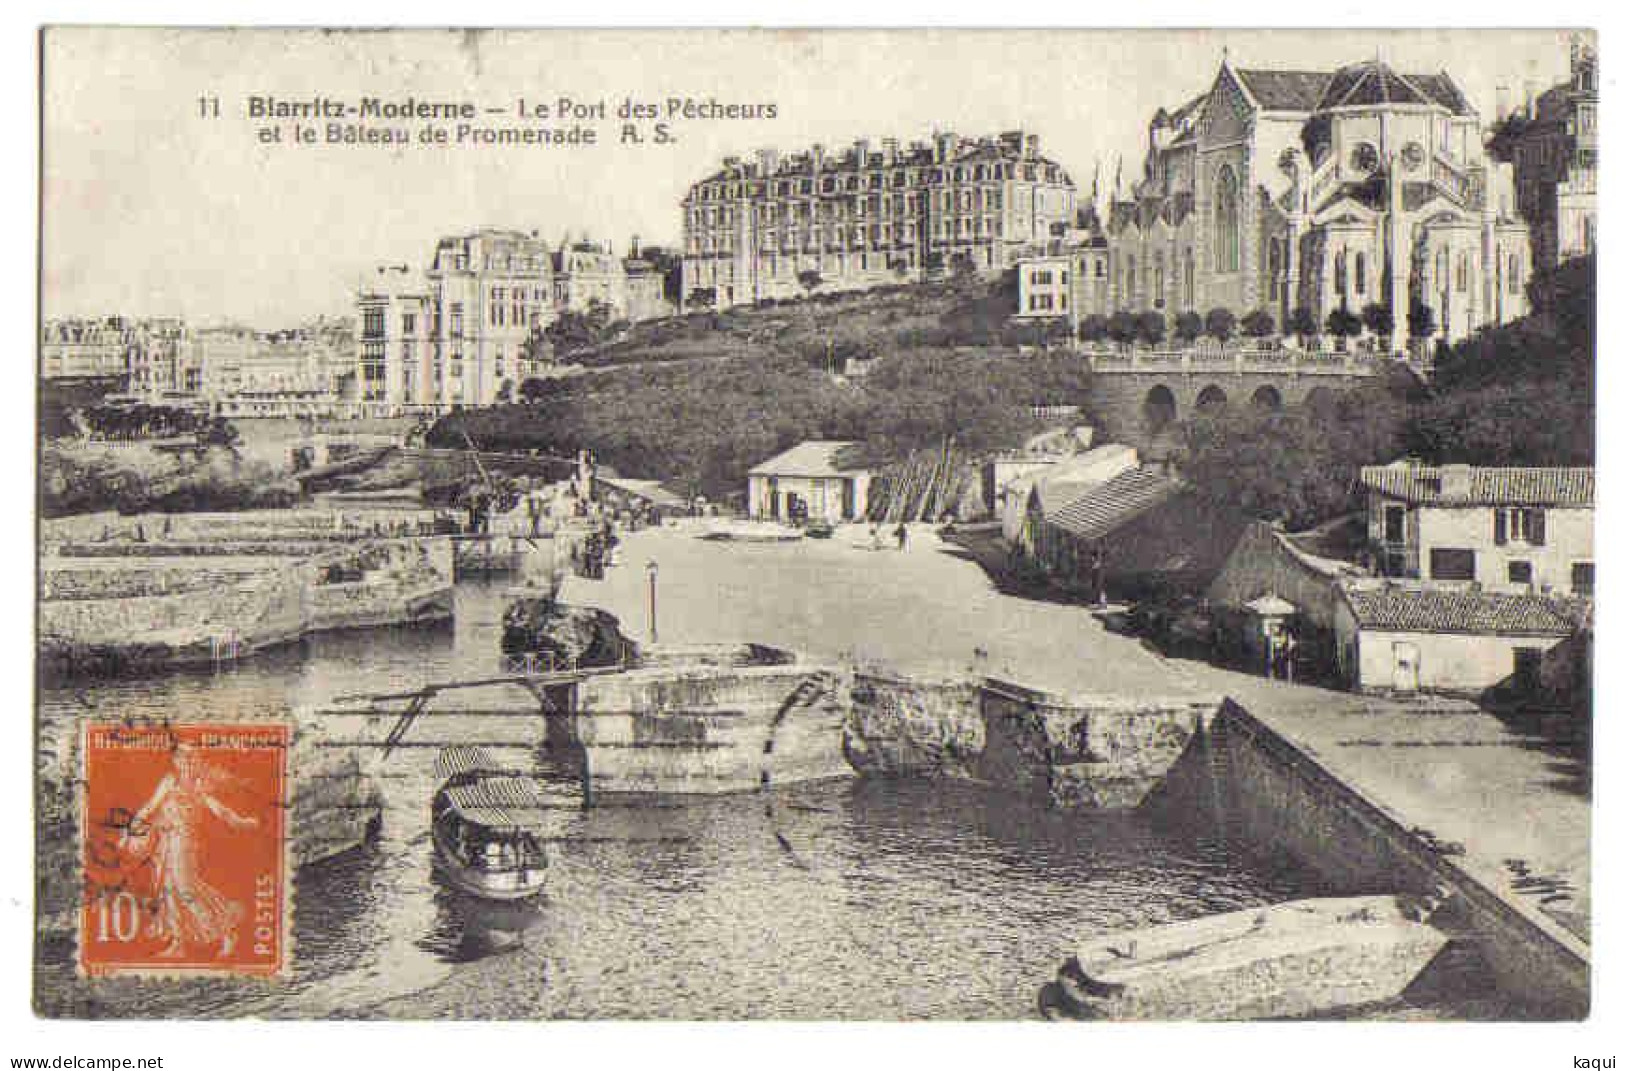 PYRENEES-ATLANTIQUES - BIARRITZ-MODERNE - Le Port Des Pêcheurs Et Le Bateau De Promenade - A. S. N° 11 - Biarritz